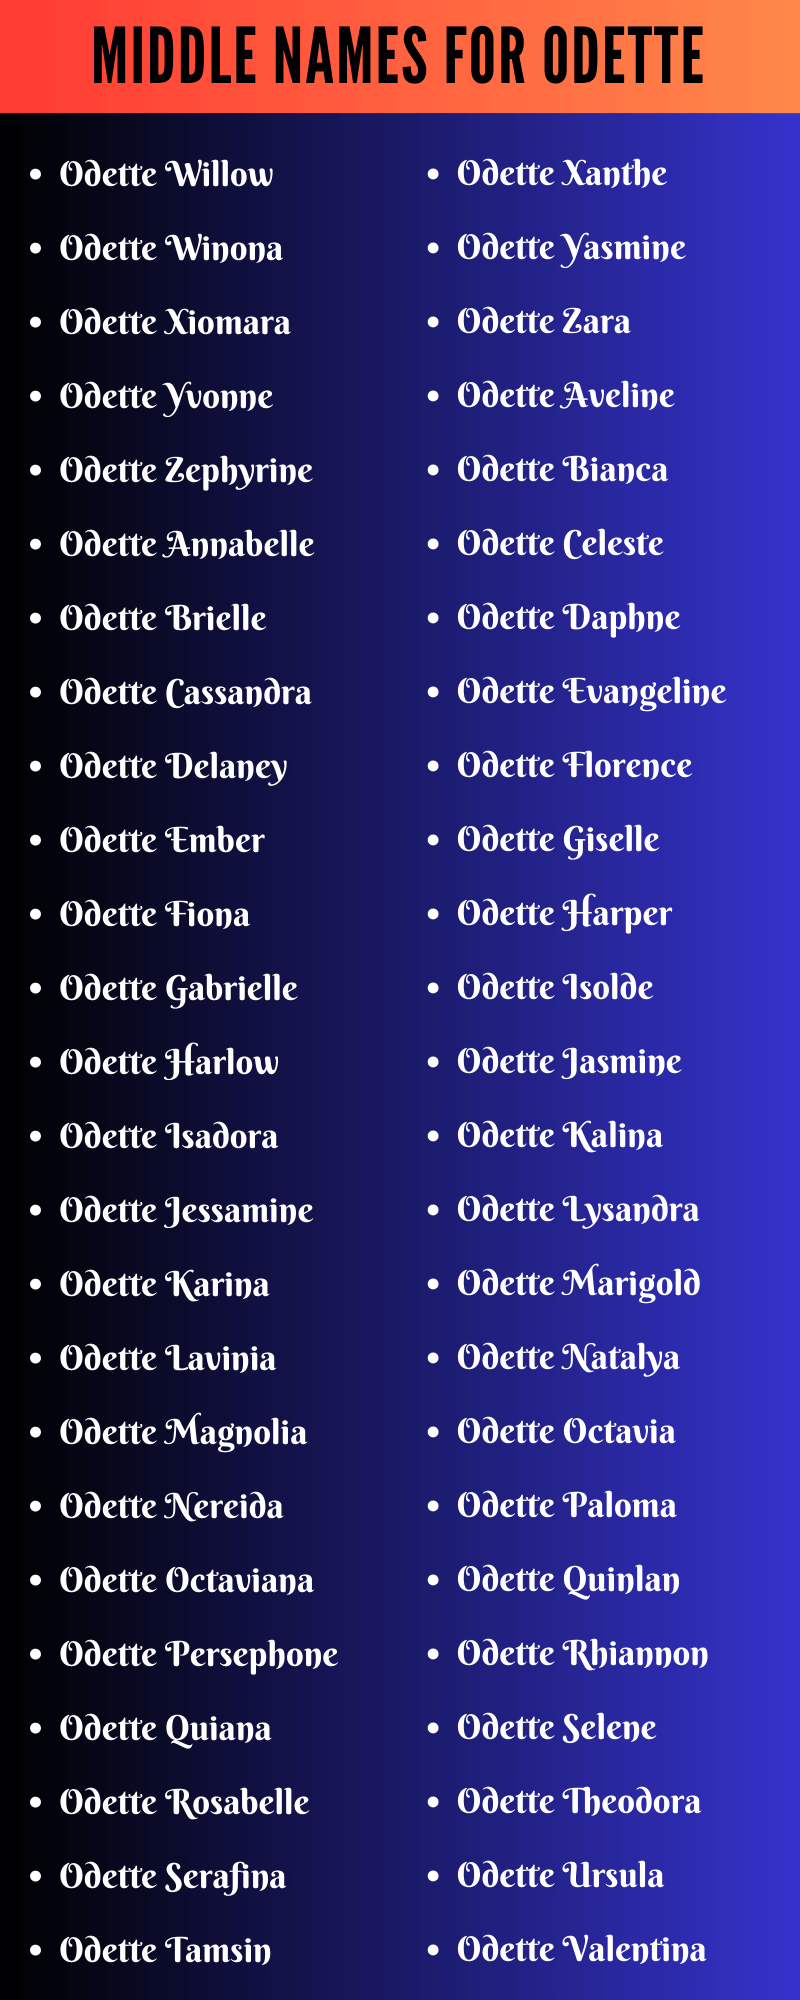 Middle Names For Odette